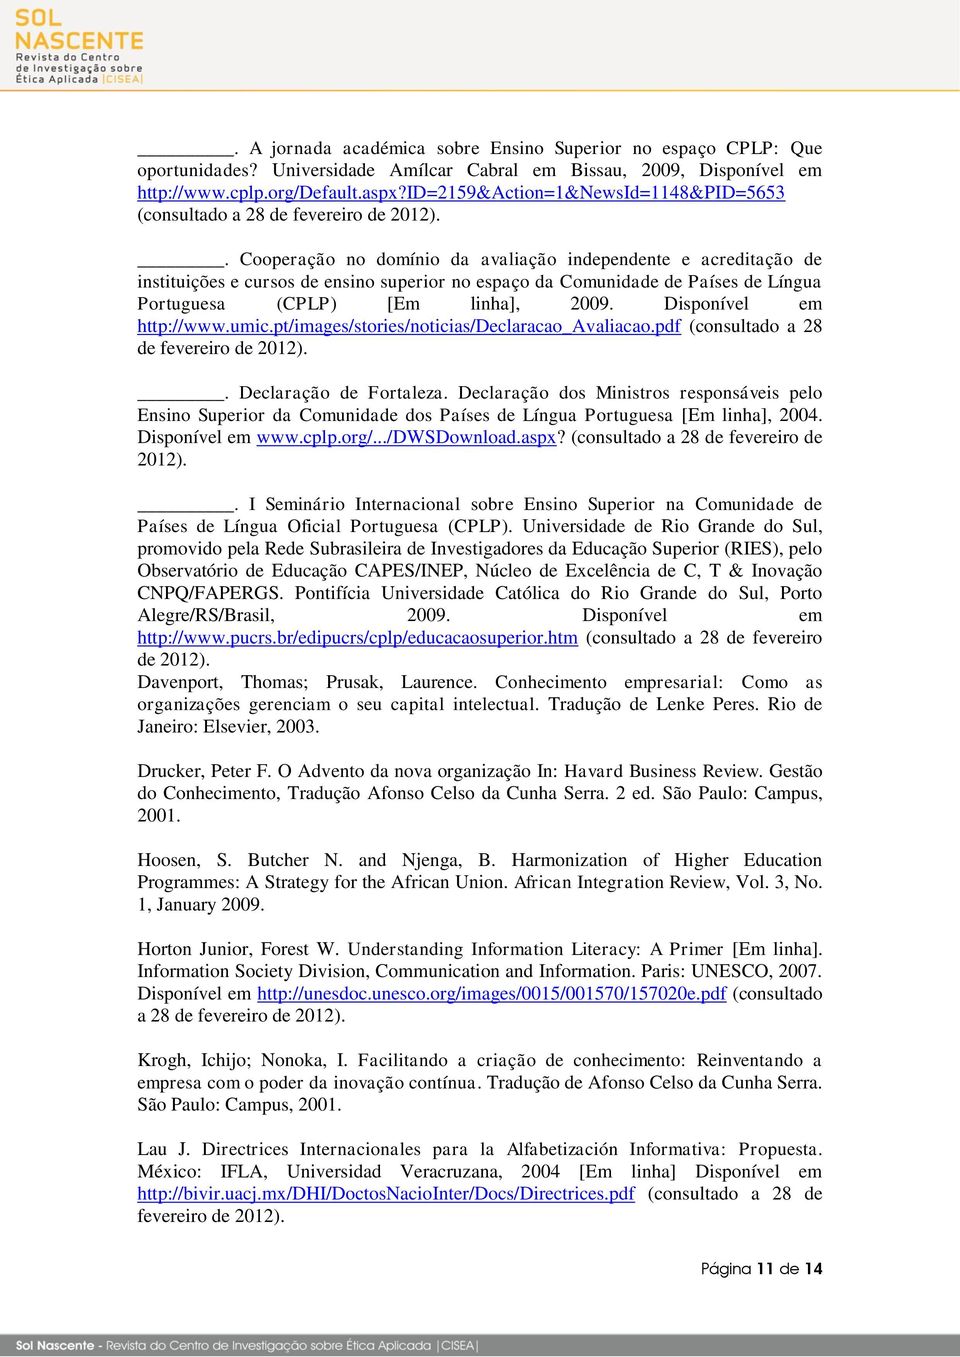 . Cooperação no domínio da avaliação independente e acreditação de instituições e cursos de ensino superior no espaço da Comunidade de Países de Língua Portuguesa (CPLP) [Em linha], 2009.